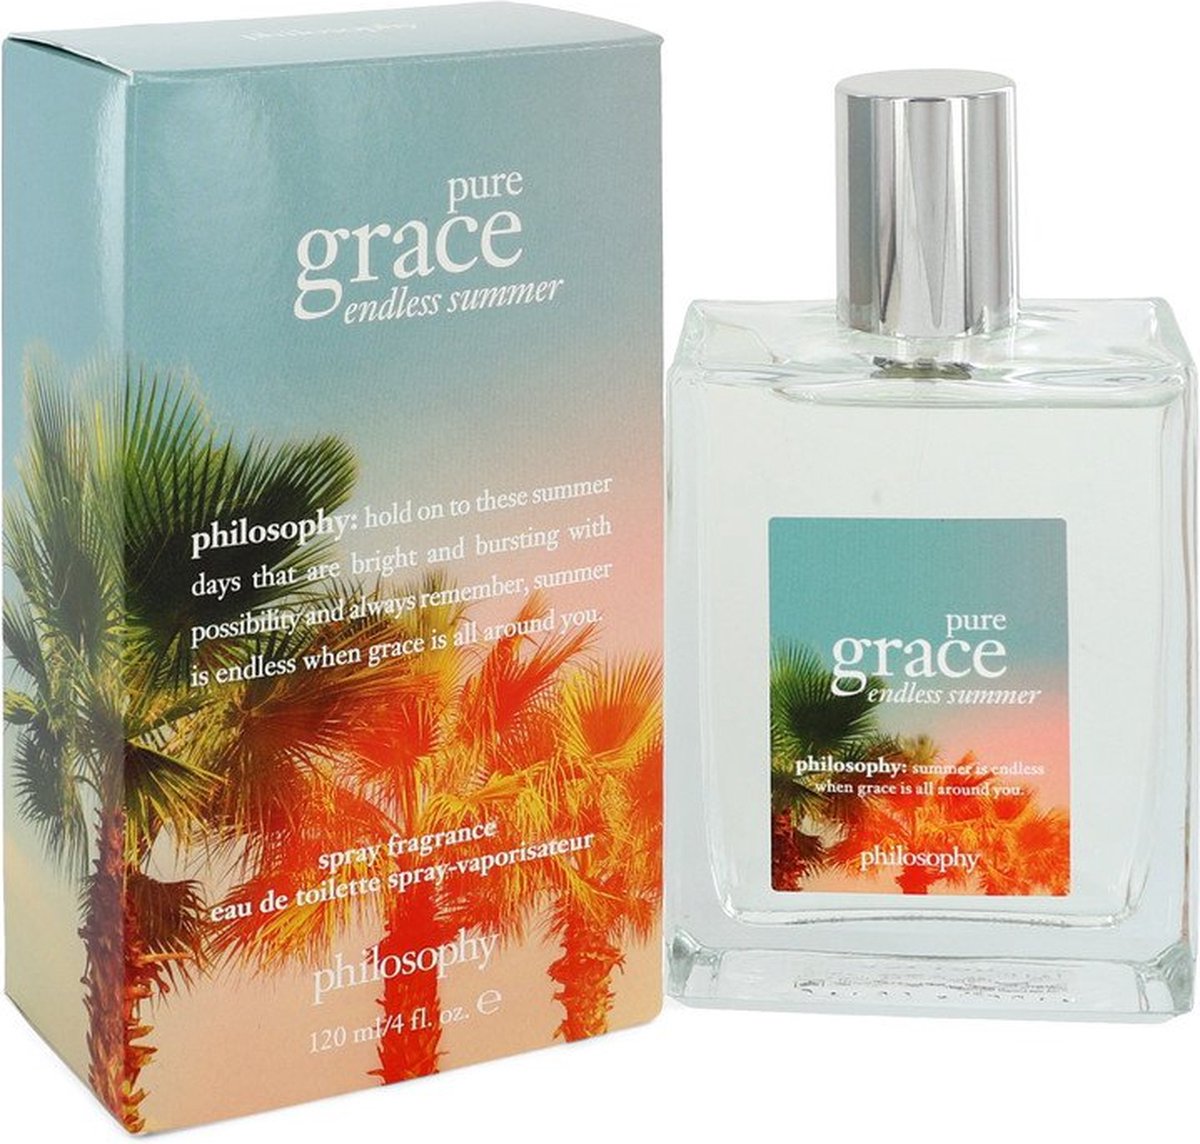 Pure Grace Endless Summer by Philosophy 120 ml - Eau De Toilette Spray